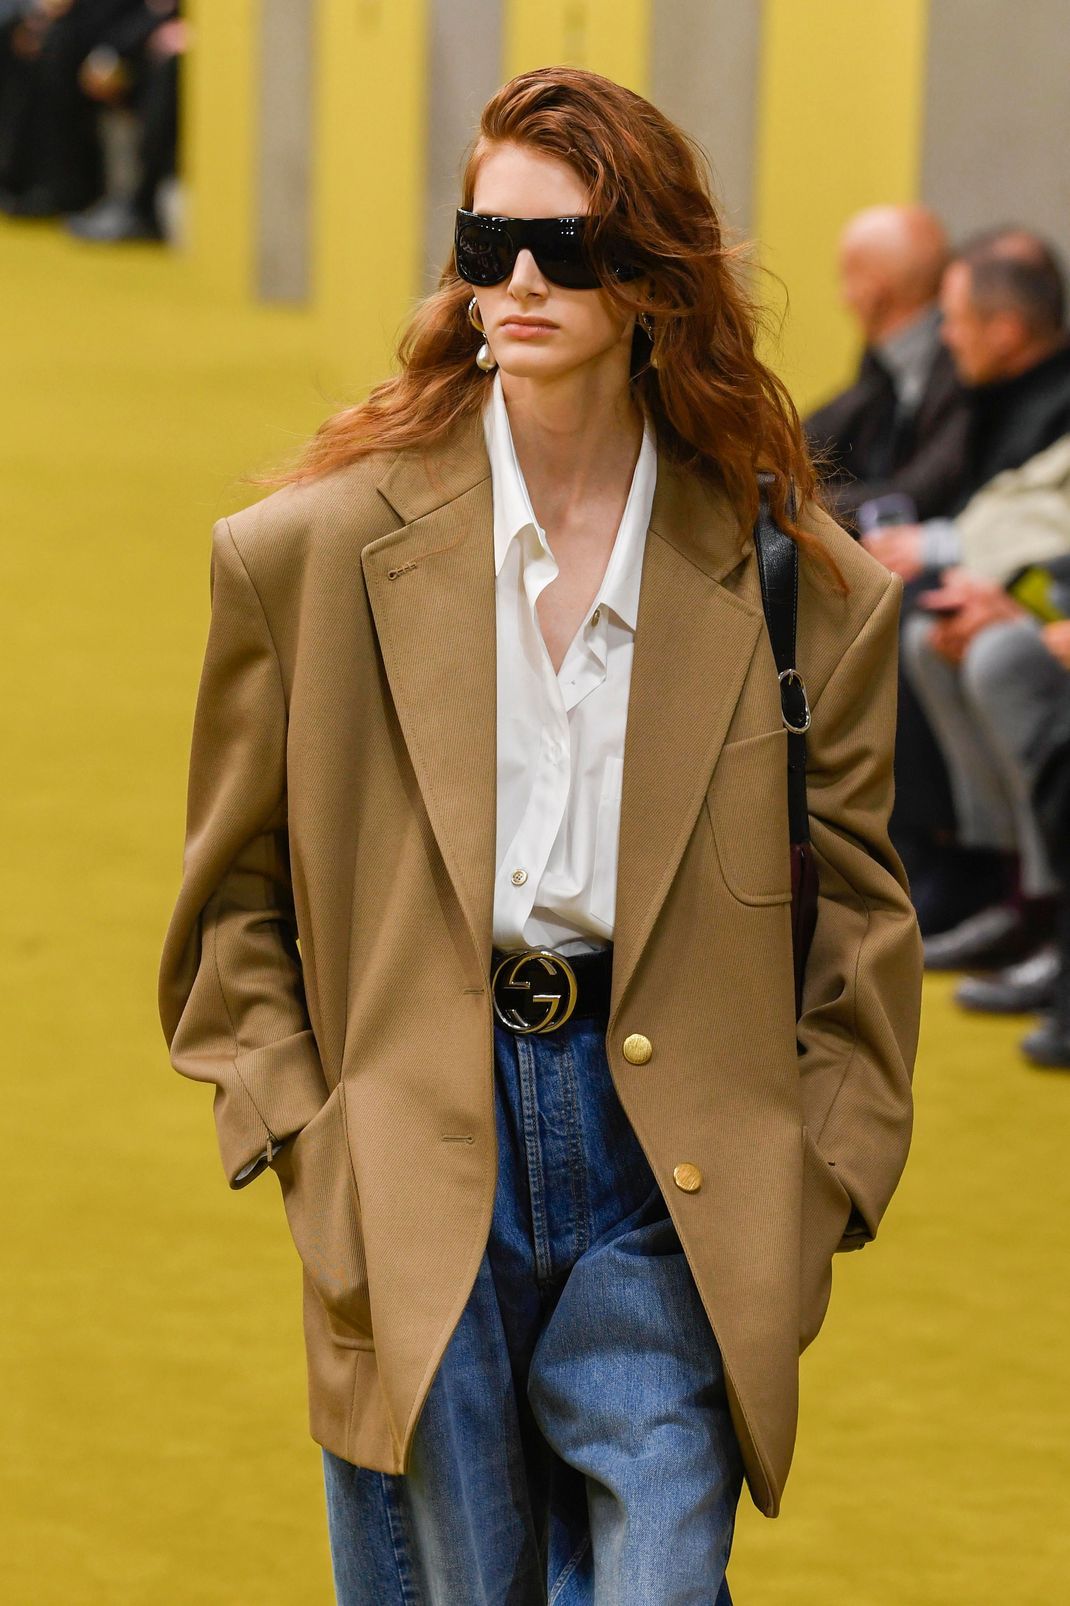 XXL-Blazer zu Jeans und weißer Bluse - so interpretiert Gucci den Normcore-Look